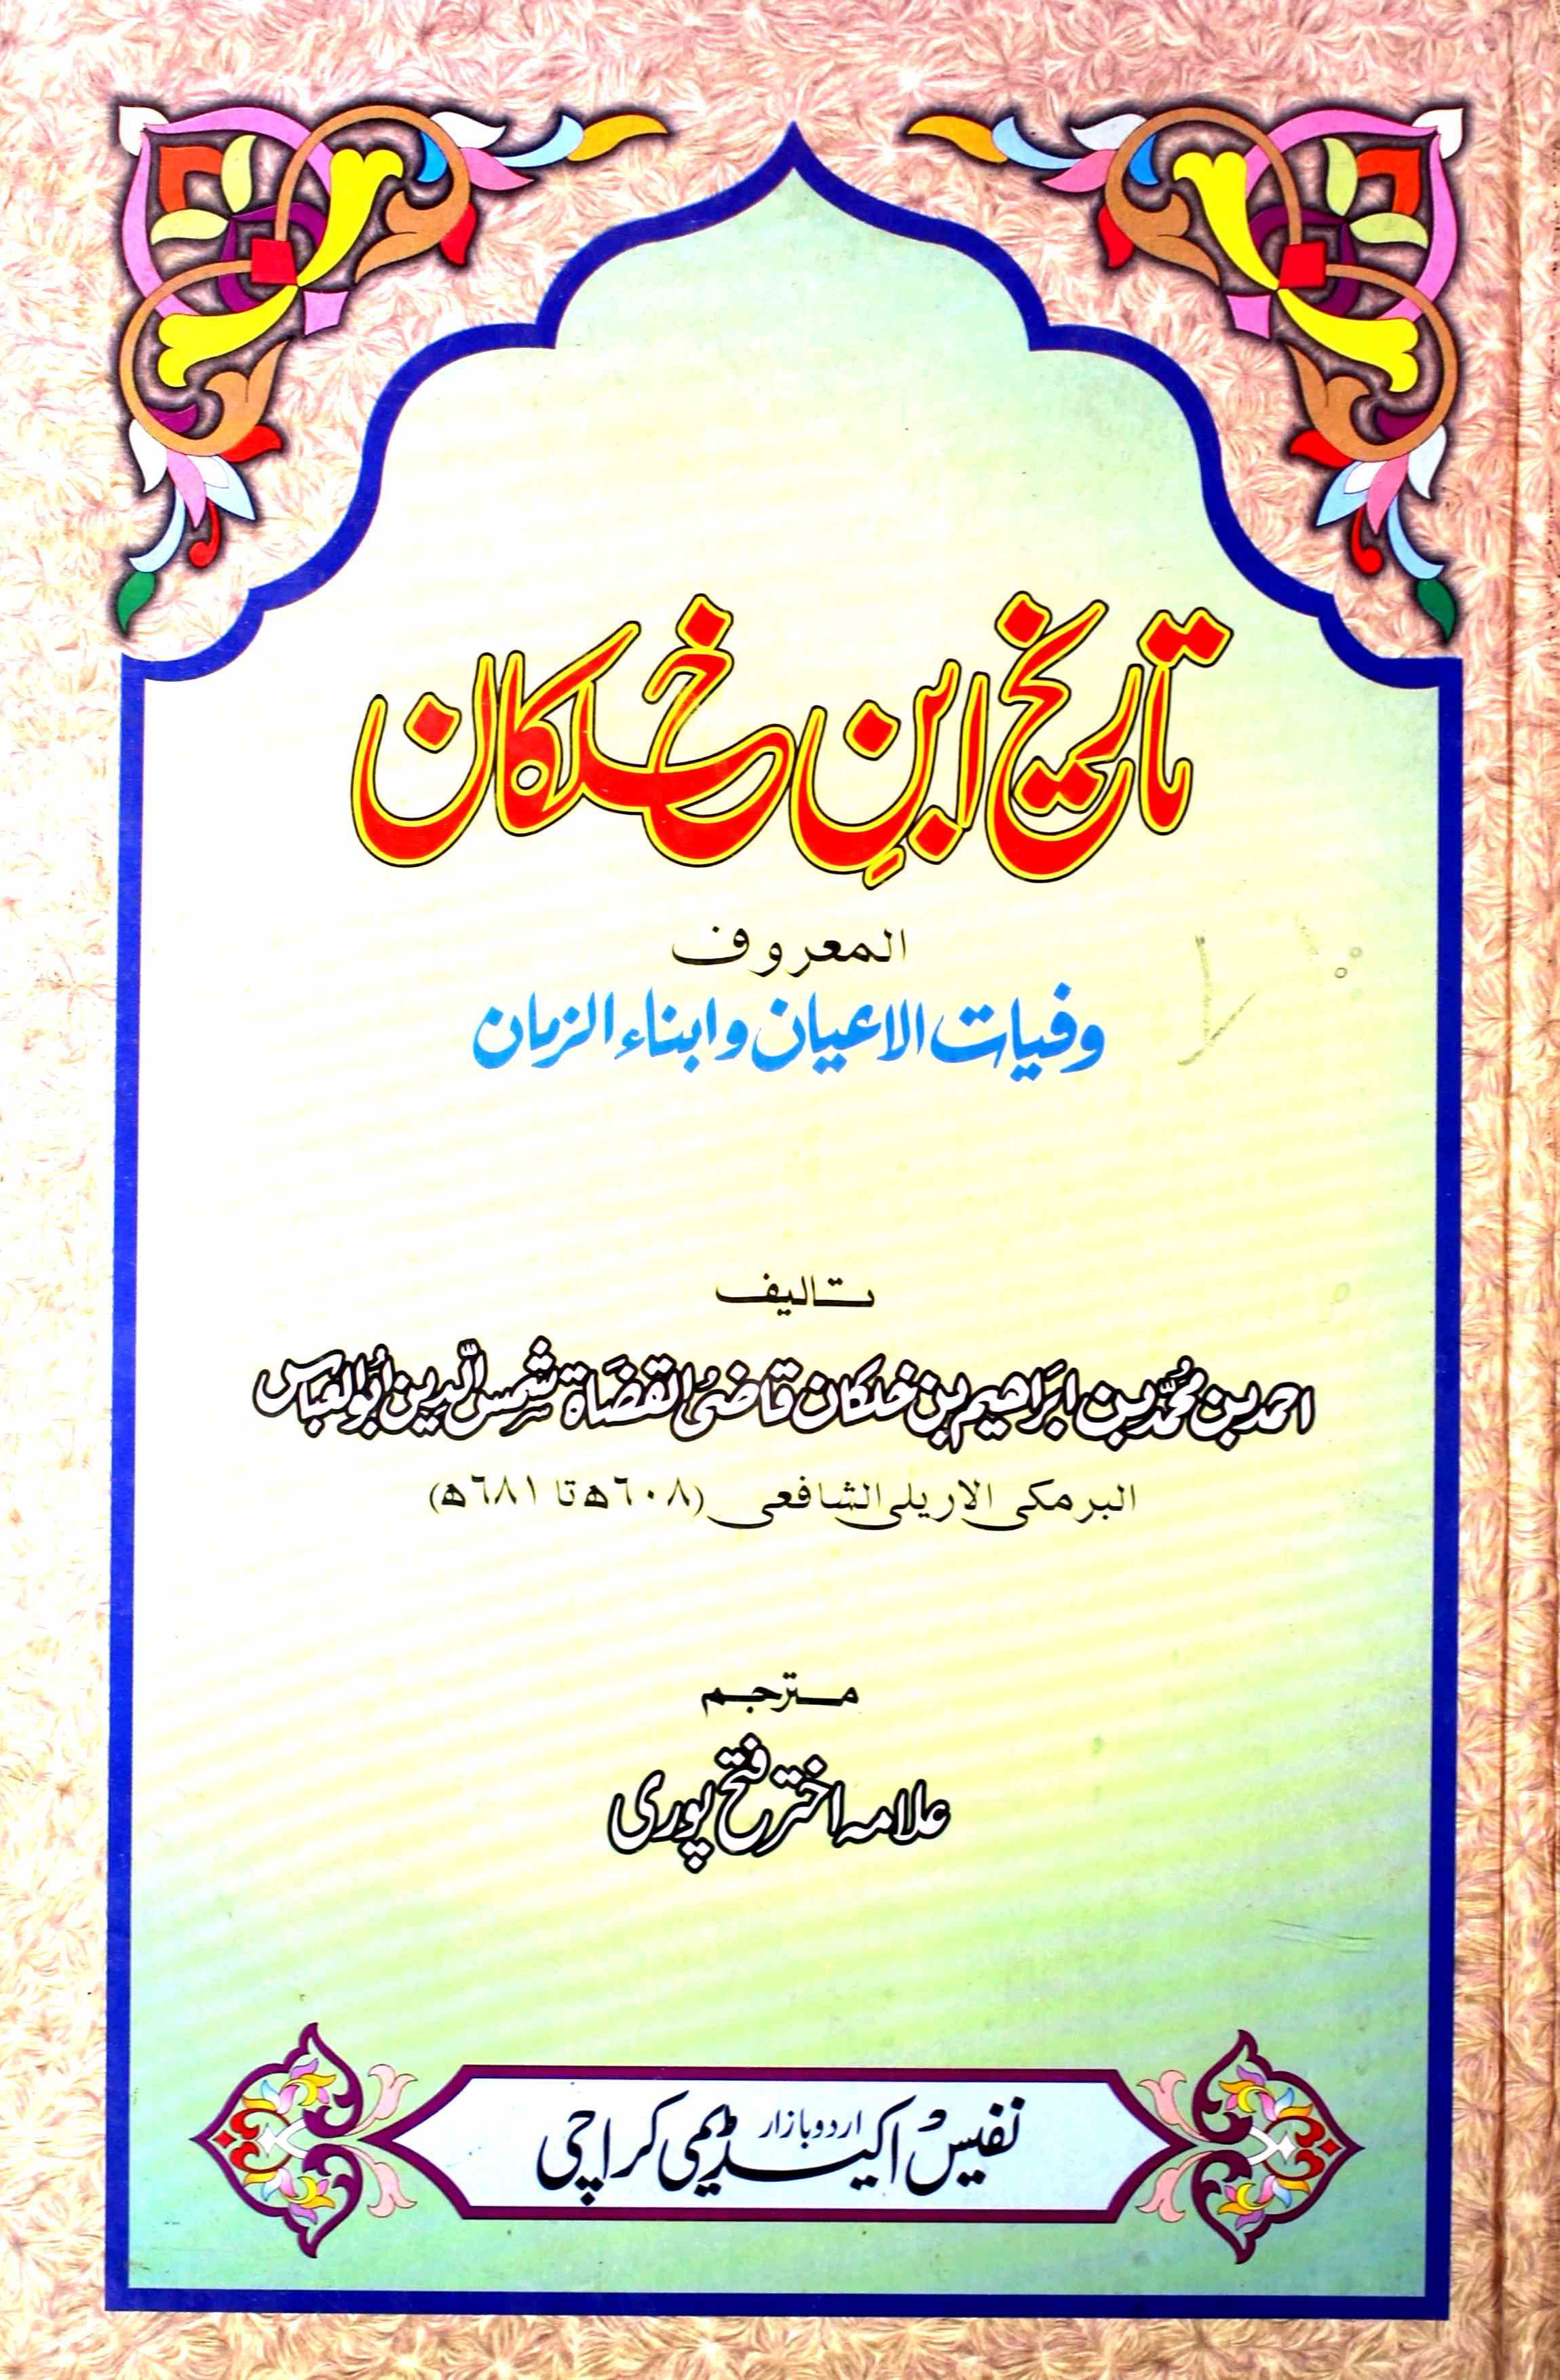 tareekh ibn-e-khalkan